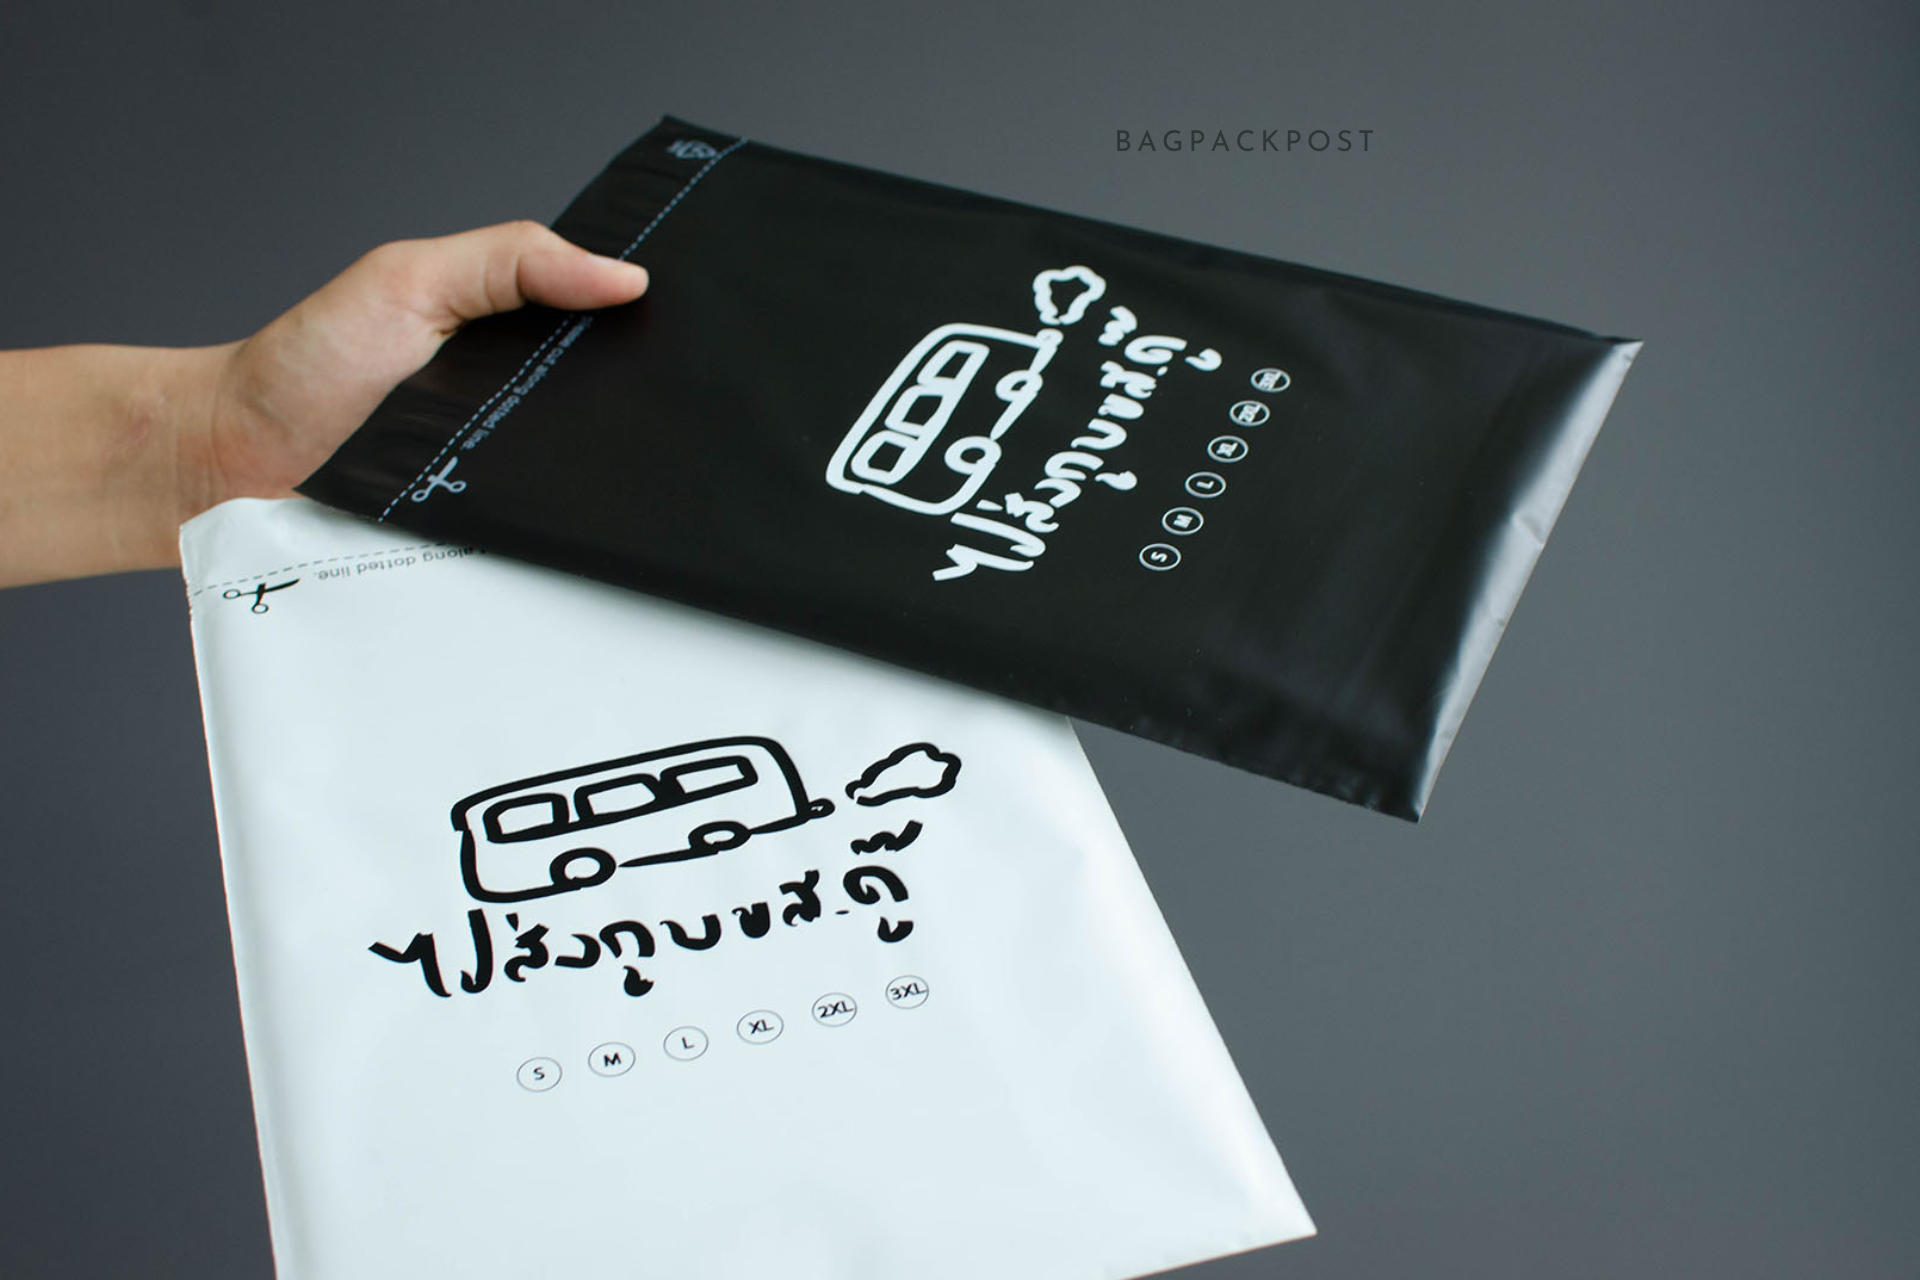 ผลิตถุงไปรษณีย์ ซองไปรษณีย์พิมพ์ลาย ไปส่งกู บขส. ดู๊ ซองไปรษณีย์สีดำ ถุงไปรษณีย์พิมพ์ลาย 2 BagPackPost